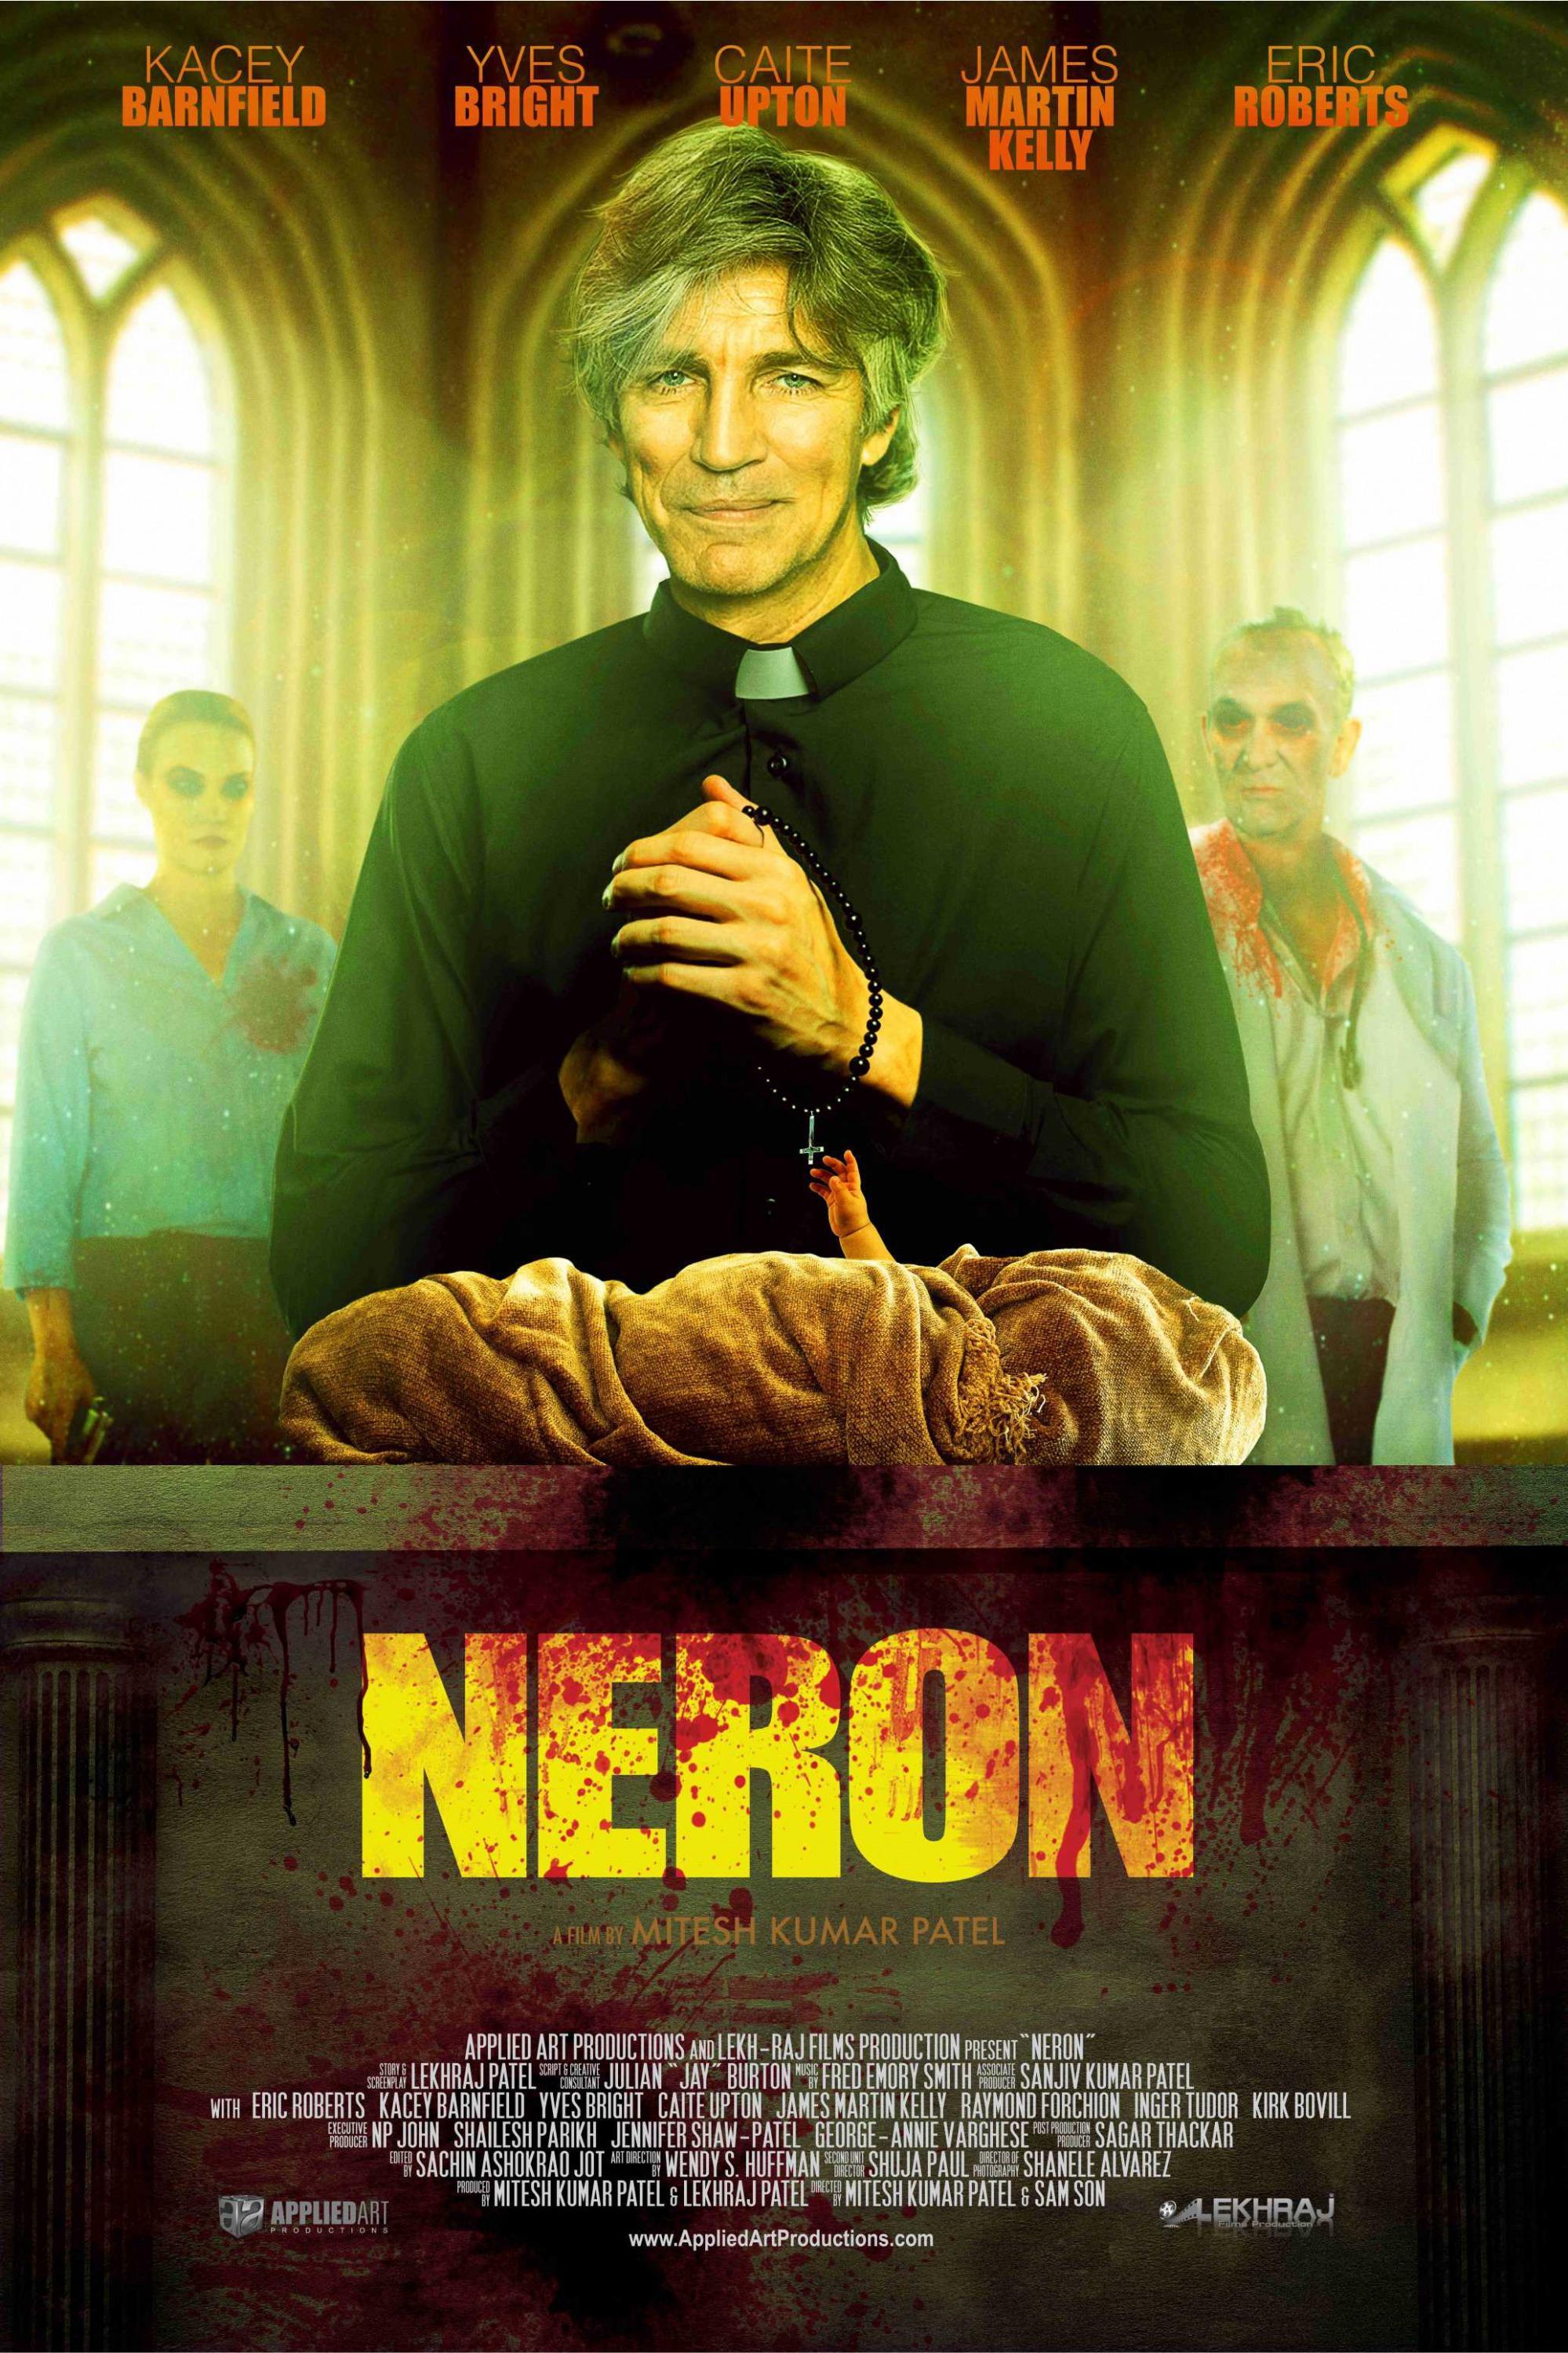 Постер фильма Neron